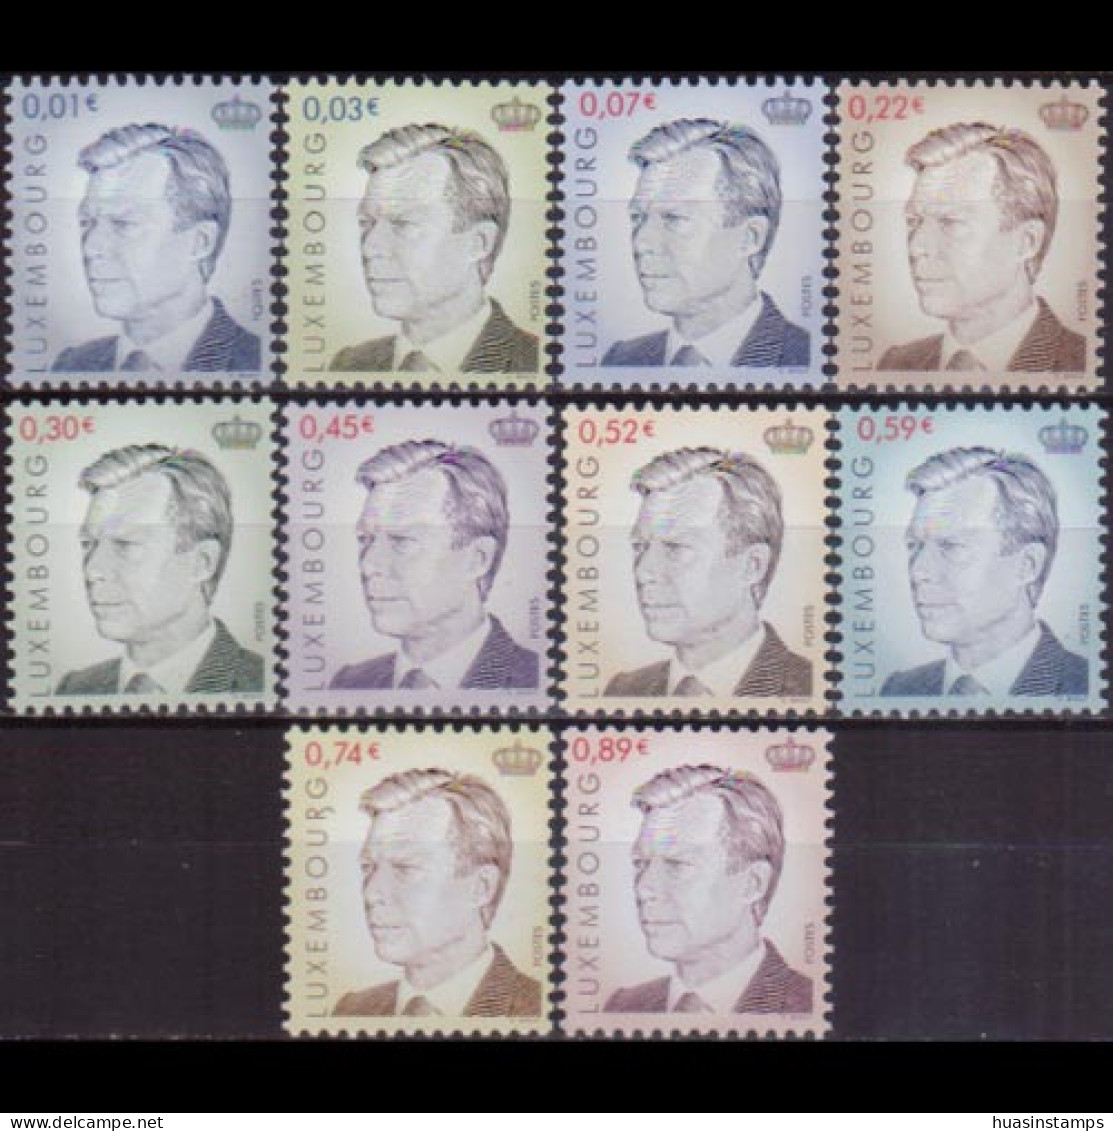 LUXEMBOURG 2001 - #1072-81 Grand Duke Henri Set Of 10 MNH - Neufs